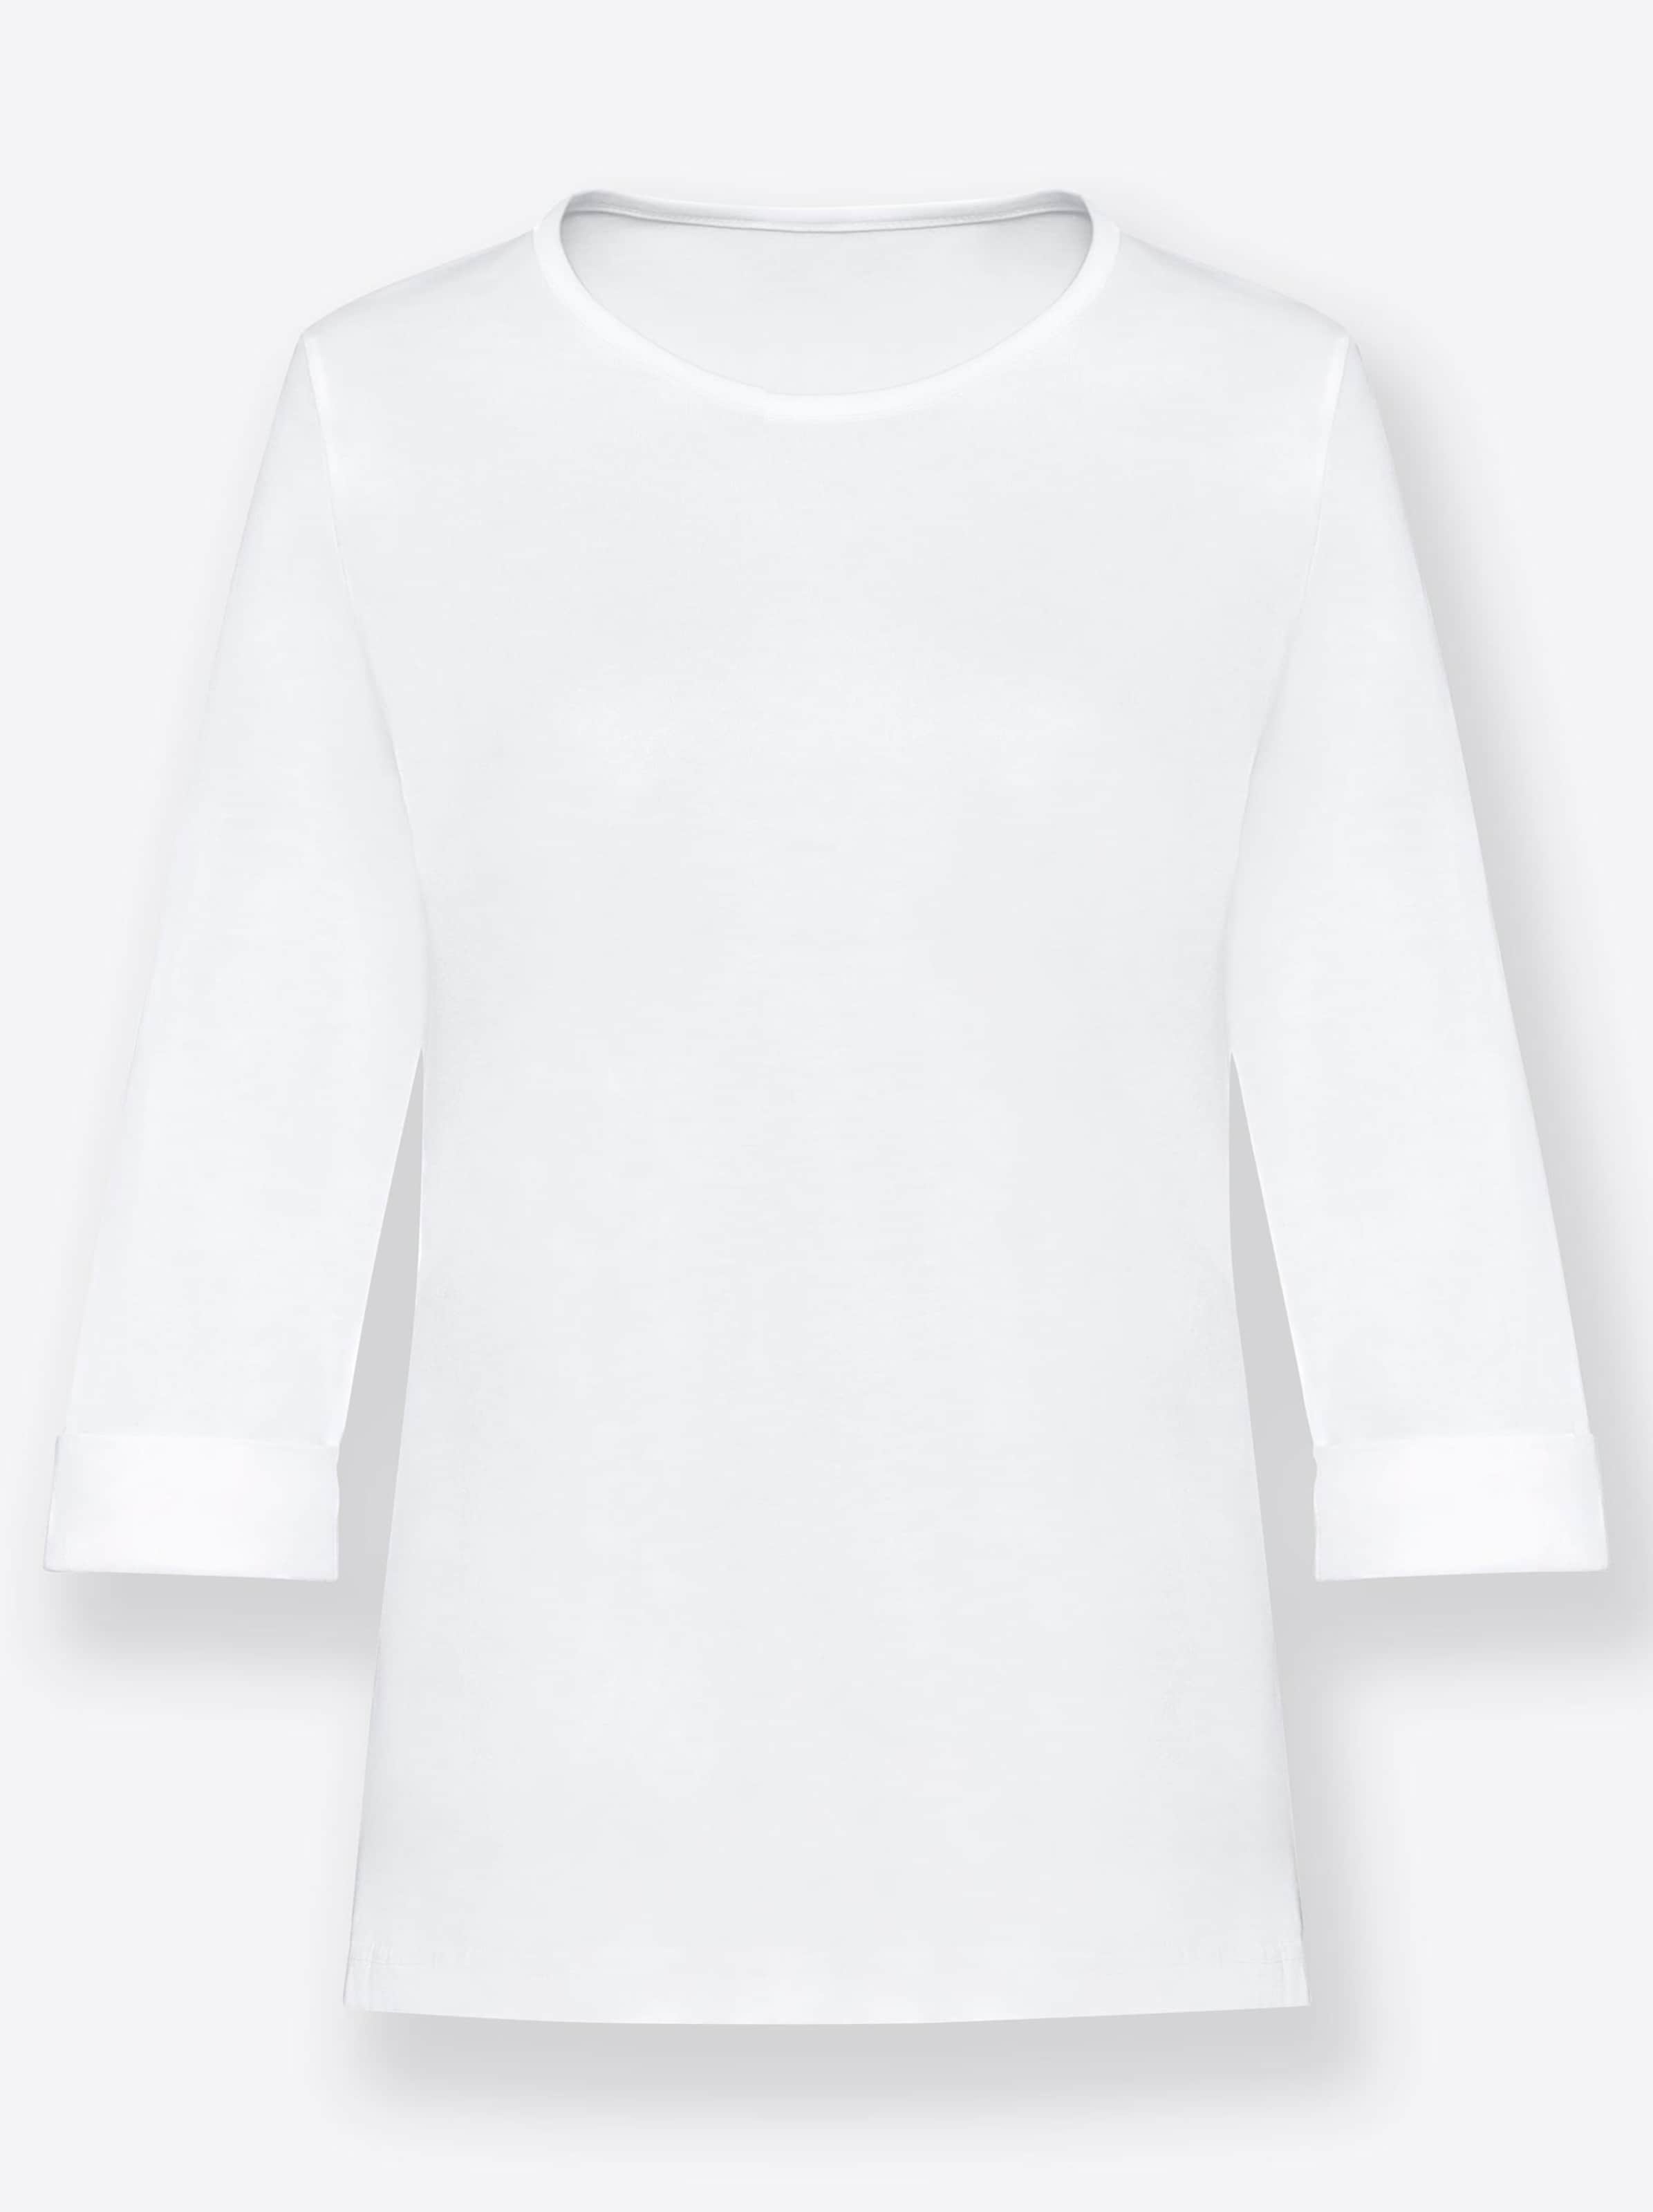 Damenmode Shirts Rundhalsshirt in weiß 